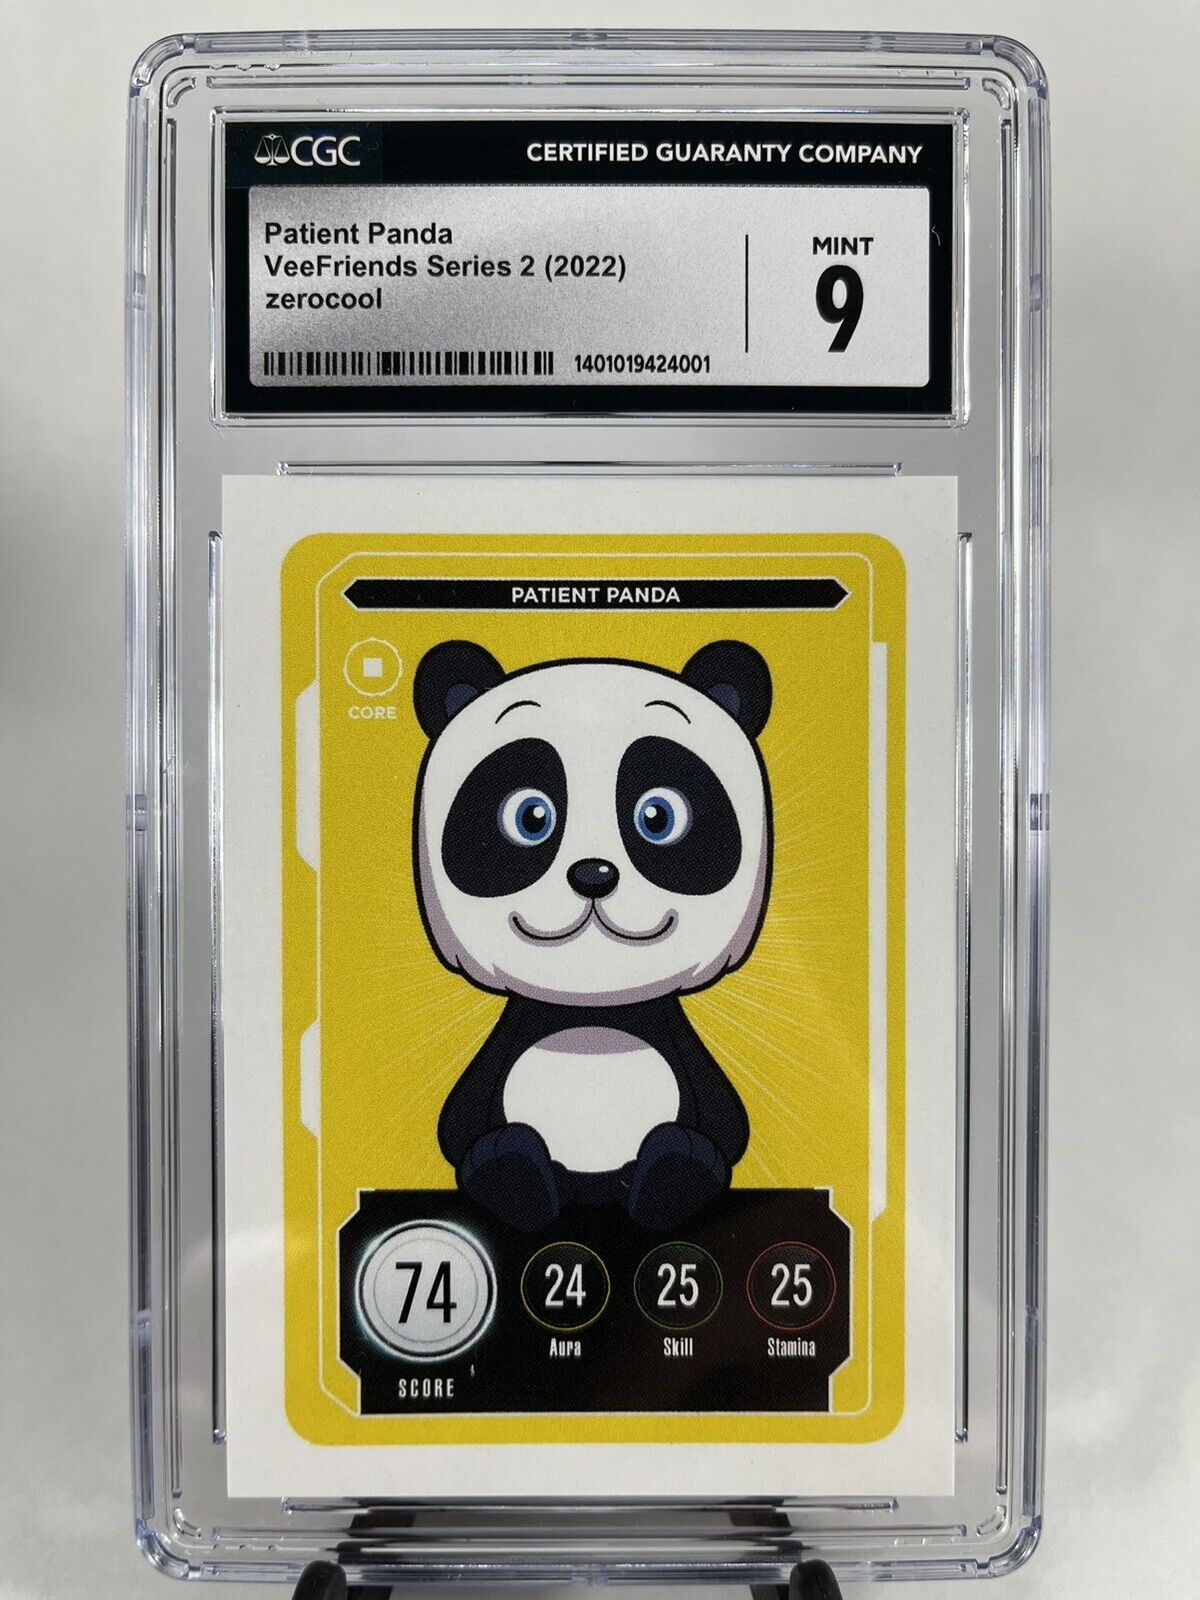 CGC Mint 9 VeeFriends Series 2 Core Patient Panda